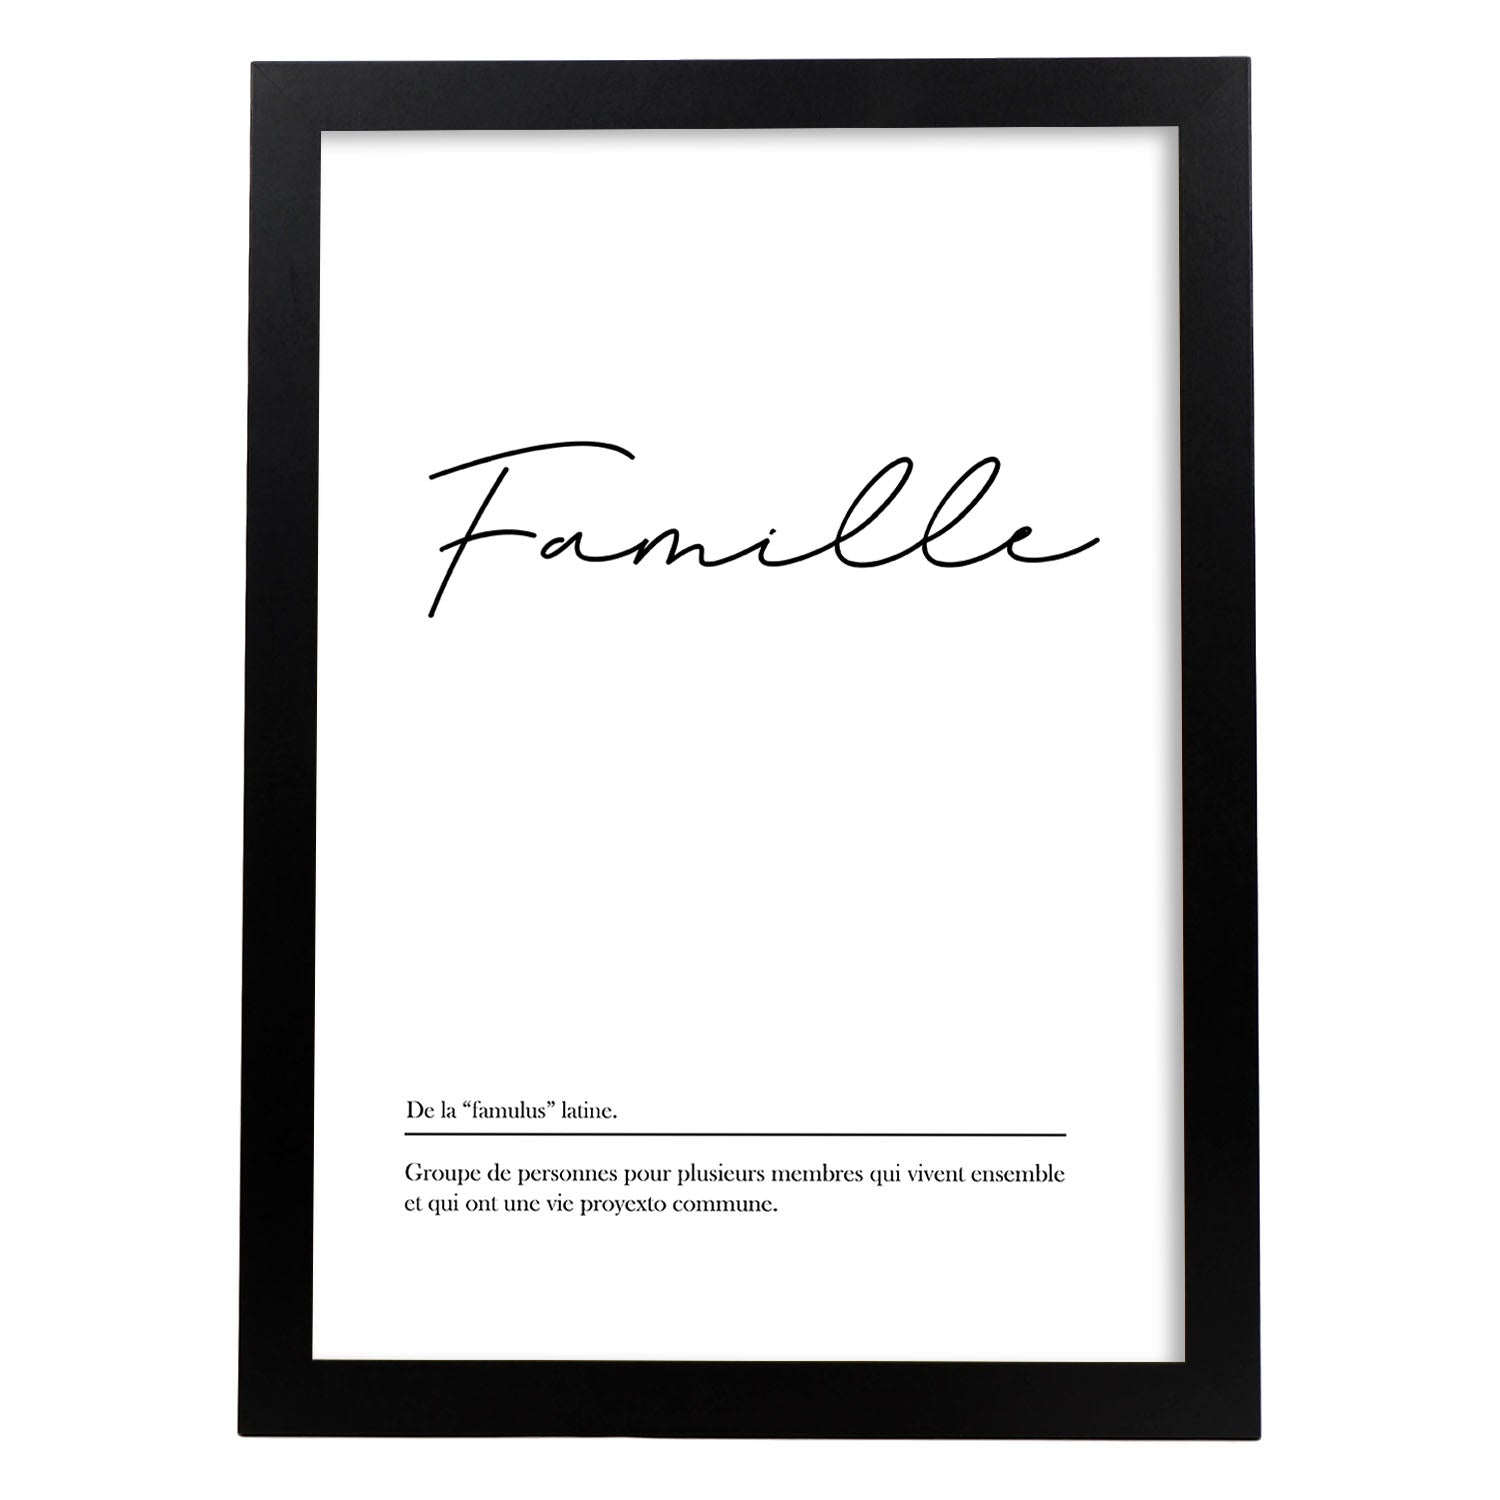 Poster con palabras en francés. Lámina Famille con definición y fondo blanco.-Artwork-Nacnic-A4-Marco Negro-Nacnic Estudio SL